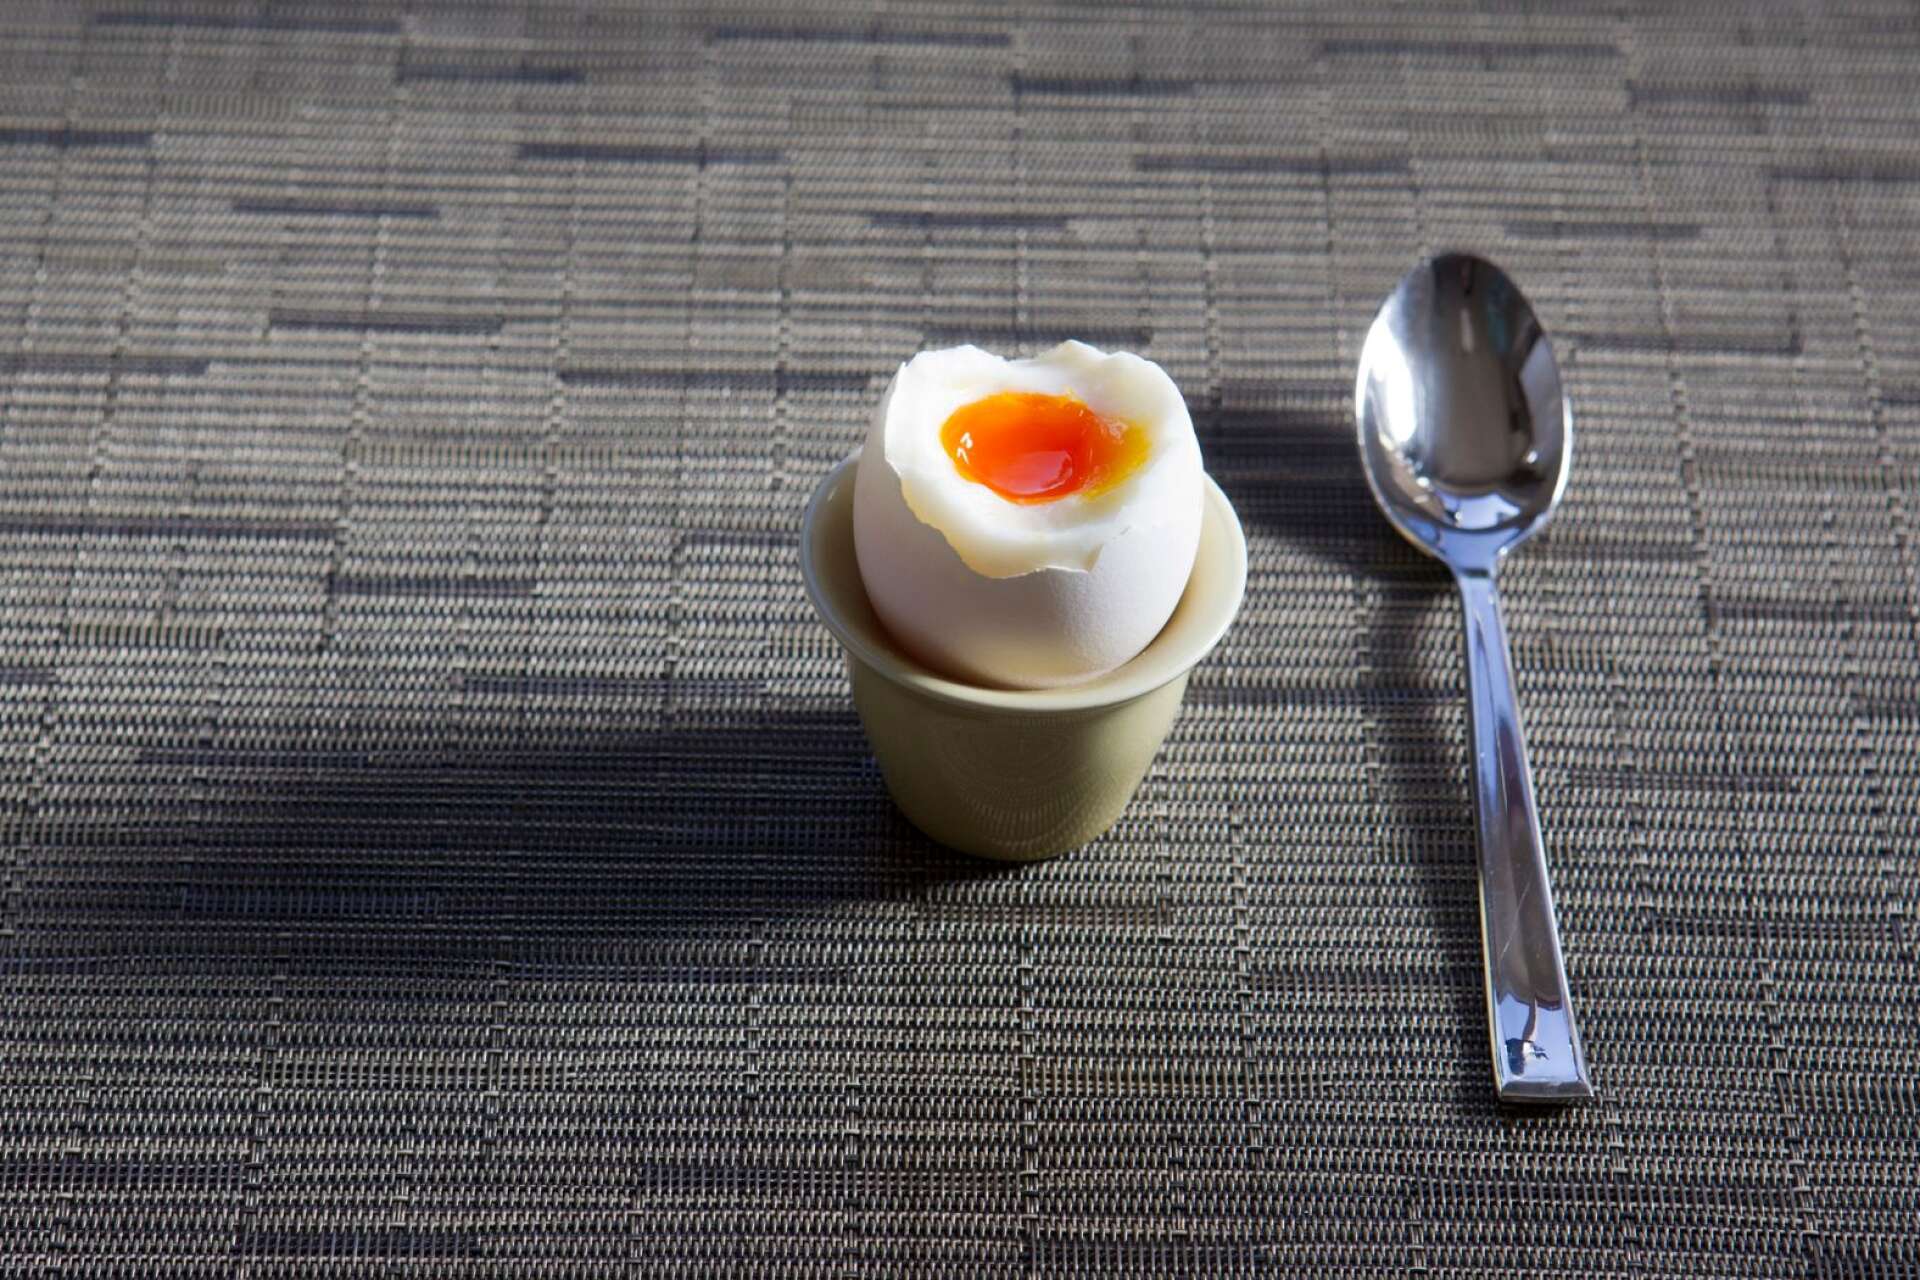 De boende som vill ha ägg dagar då det är äggfrukost får det, enligt socialnämndens ordförande.